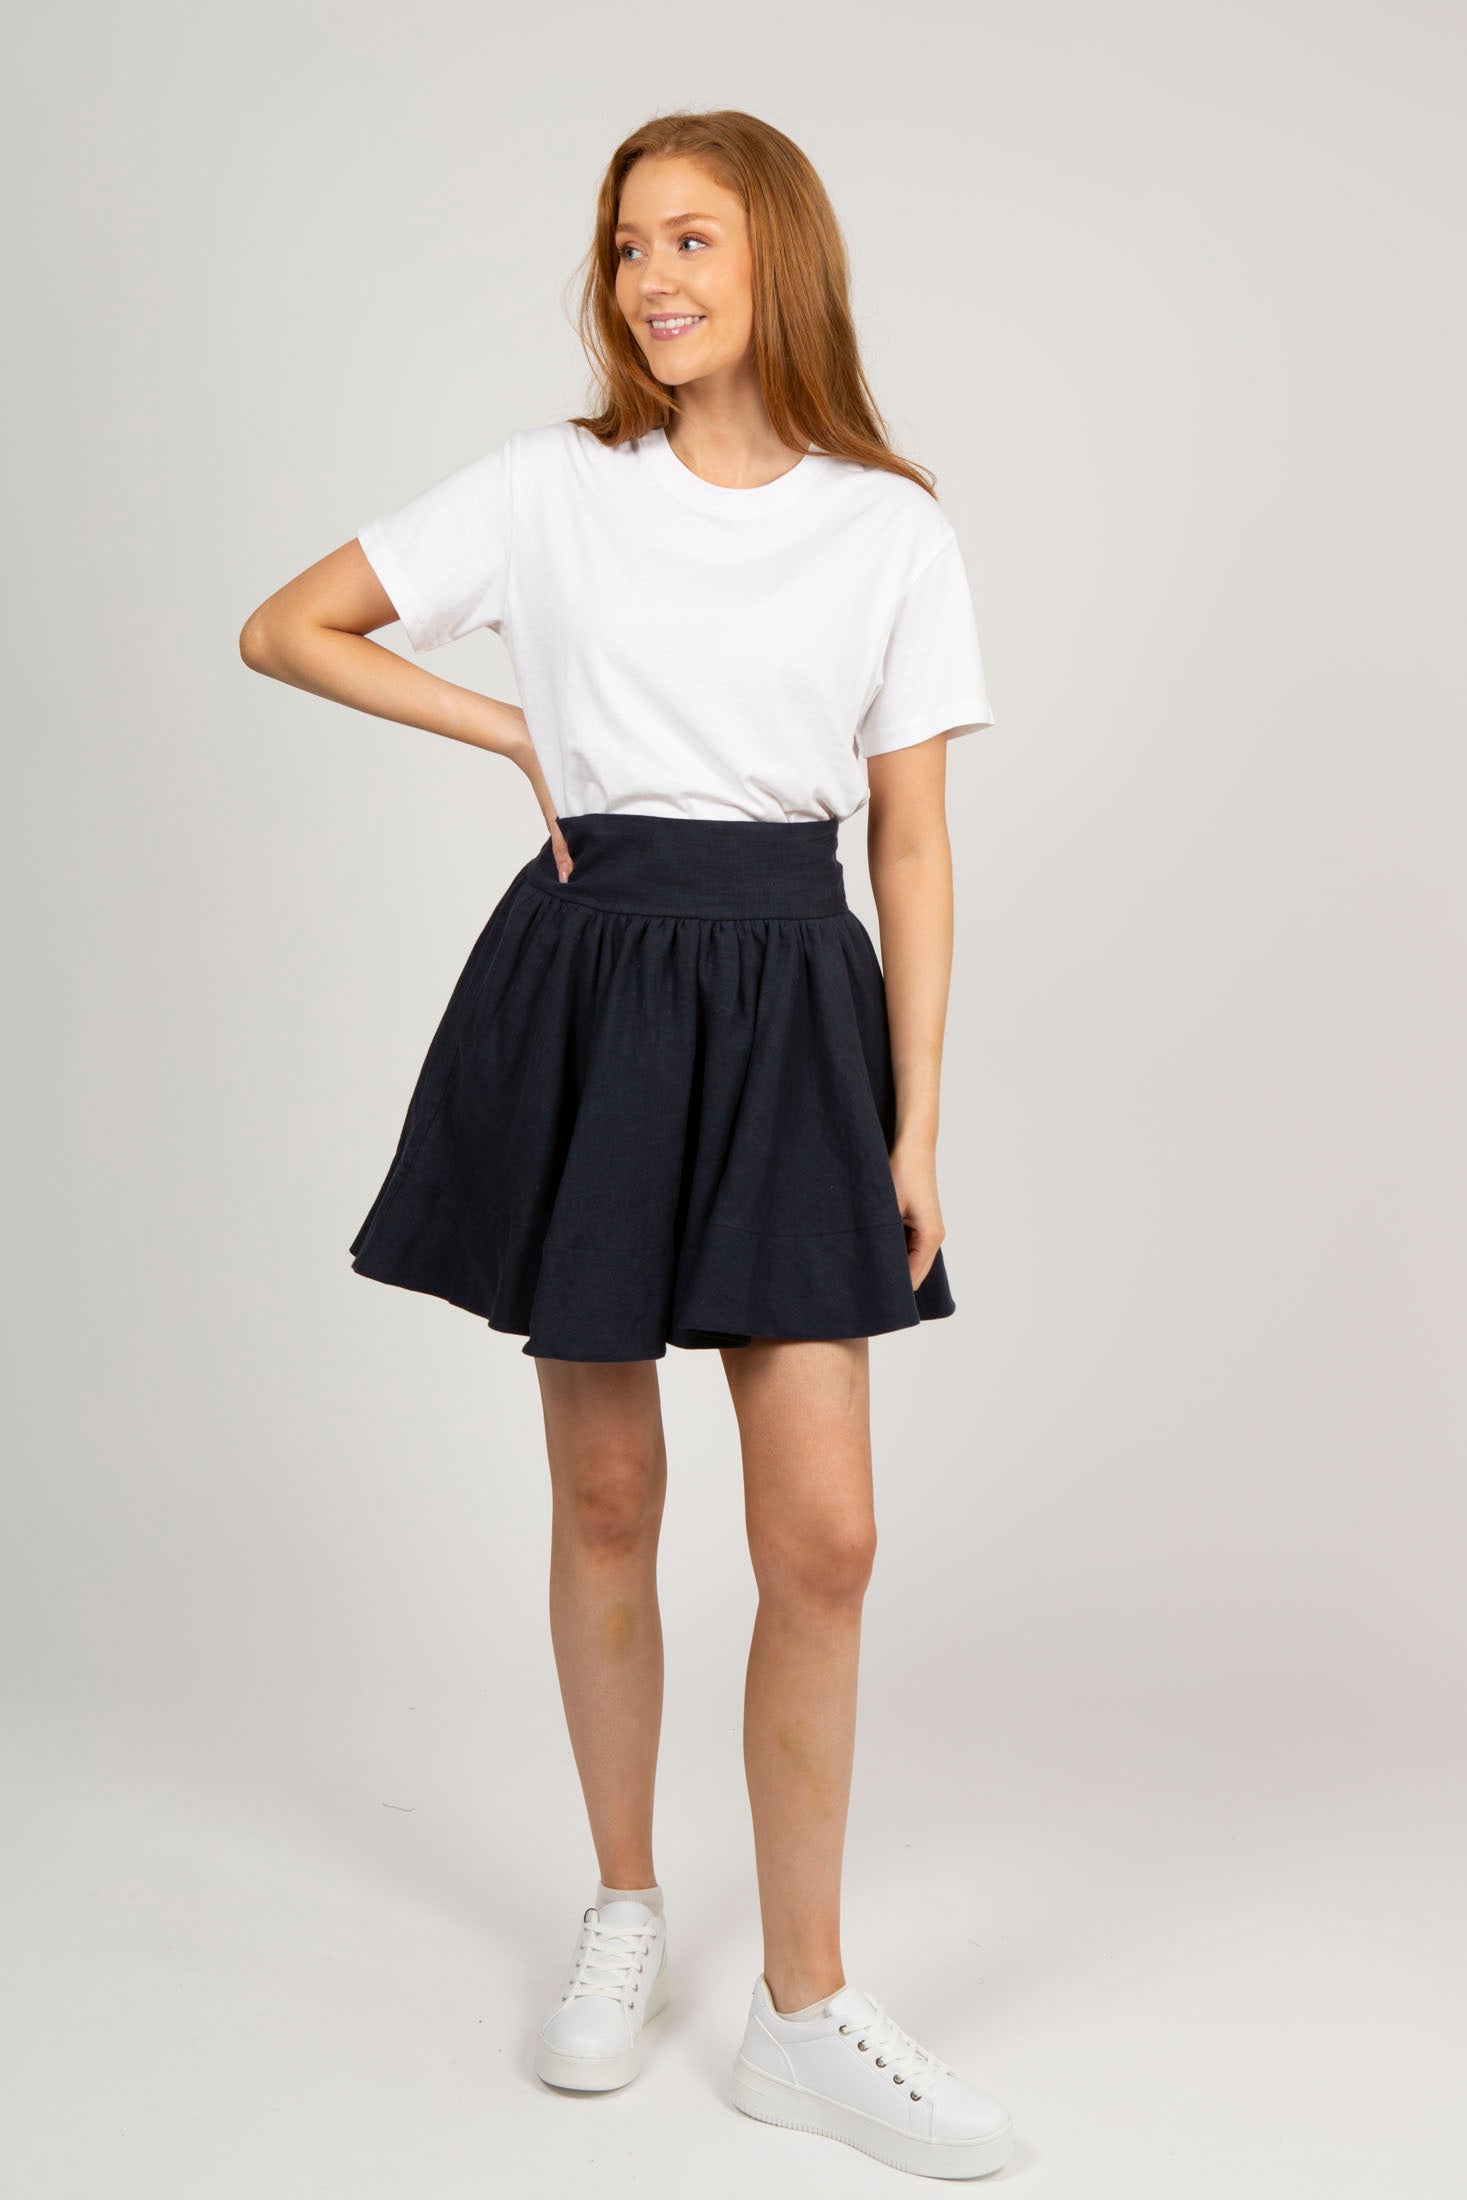 Anett Linen Skirt - Navy